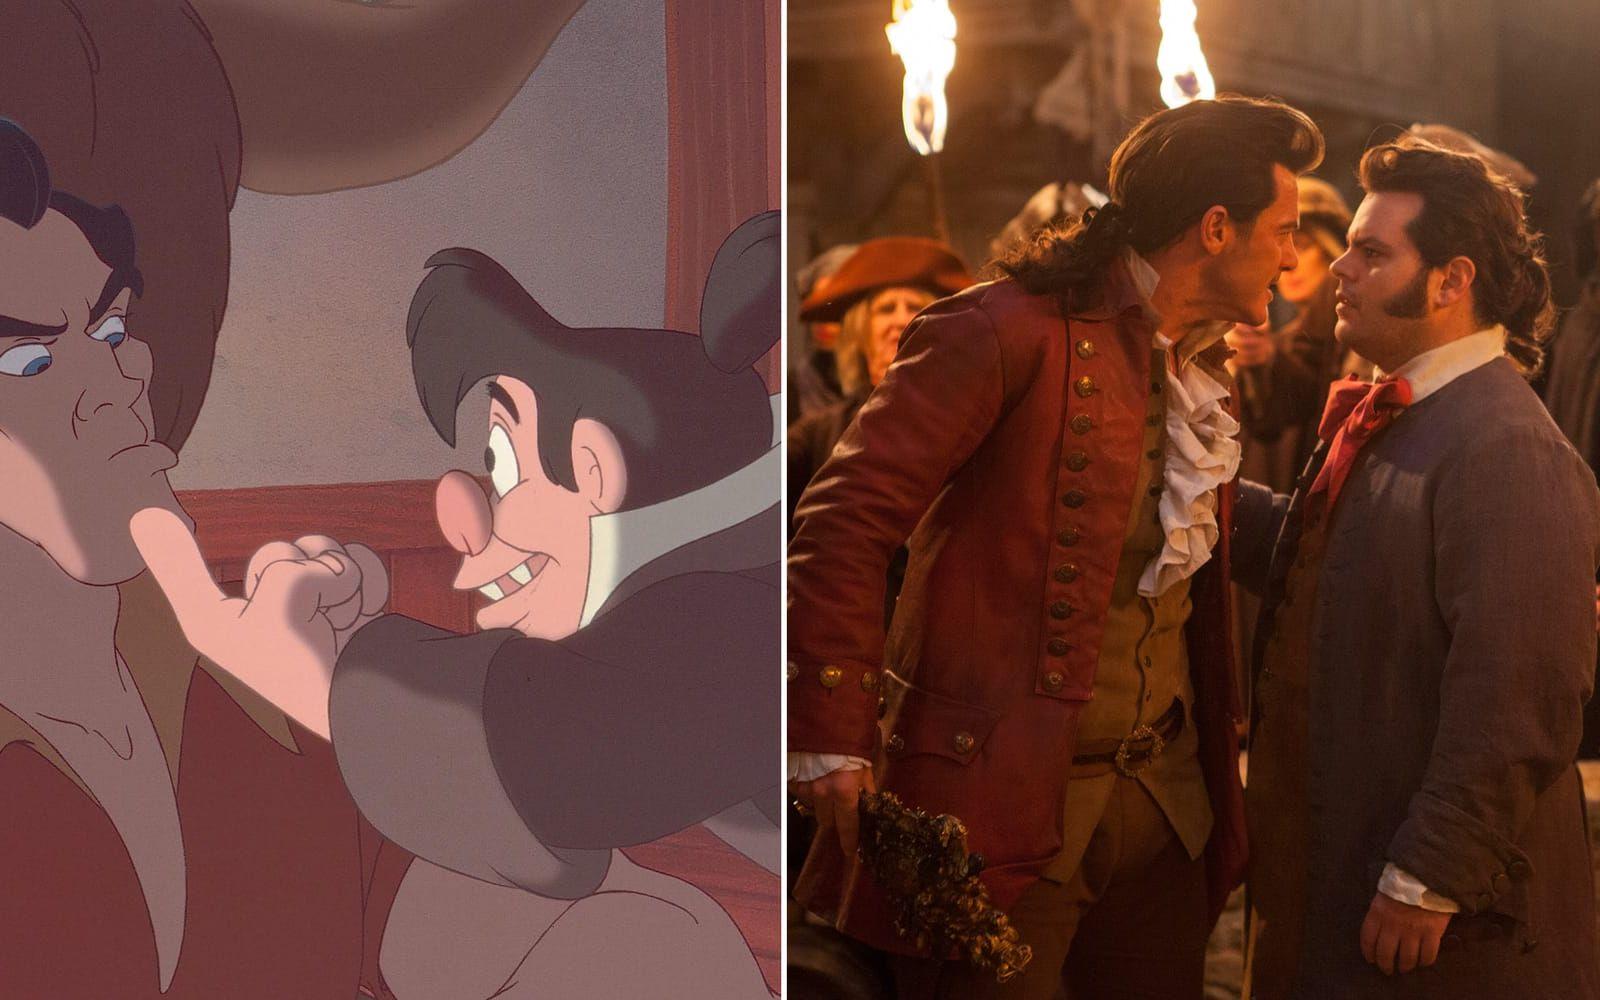 <strong>LeFou är gay.</strong> I originalet verkar det visserligen som att LeFou är en aning besatt av Gaston, men i den nya filmen är han mer än bara förtjust. Filmens regissör Bill Condon har nämligen bekräftat att han är gay och att det kommer märkas extra tydligt i en av filmens scener. LeFou är därmed den första uttalat homosexuella rollfiguren i en Disneyfilm. Foto: Disney/AP